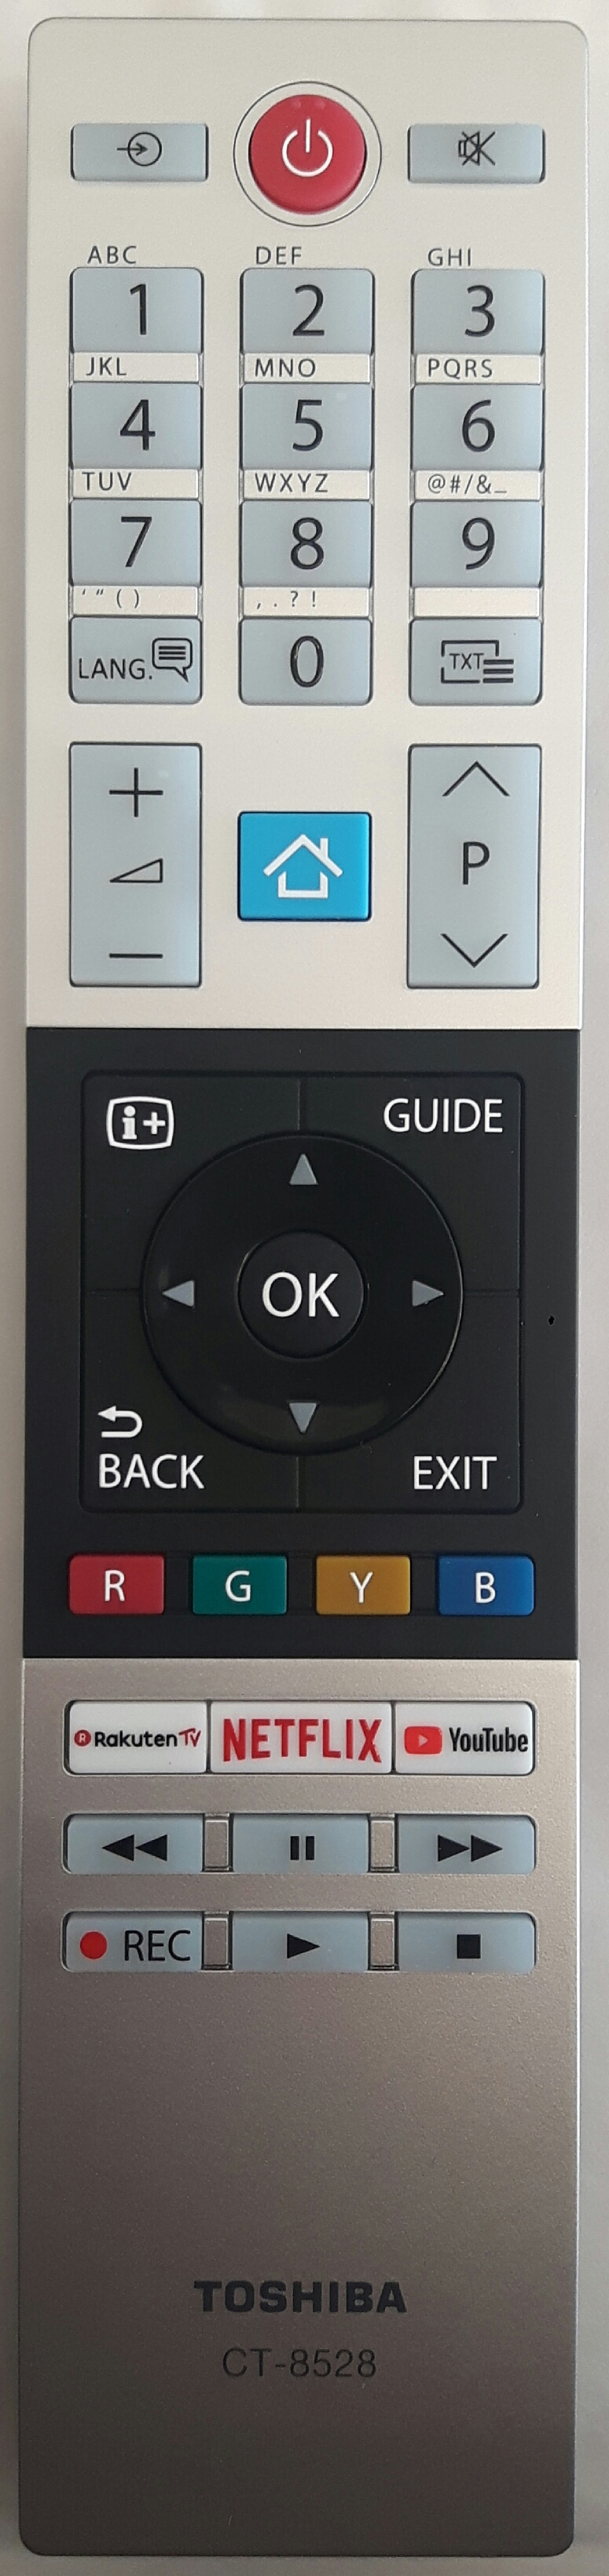 TOSHIBA 10120916 Remote Control Original 